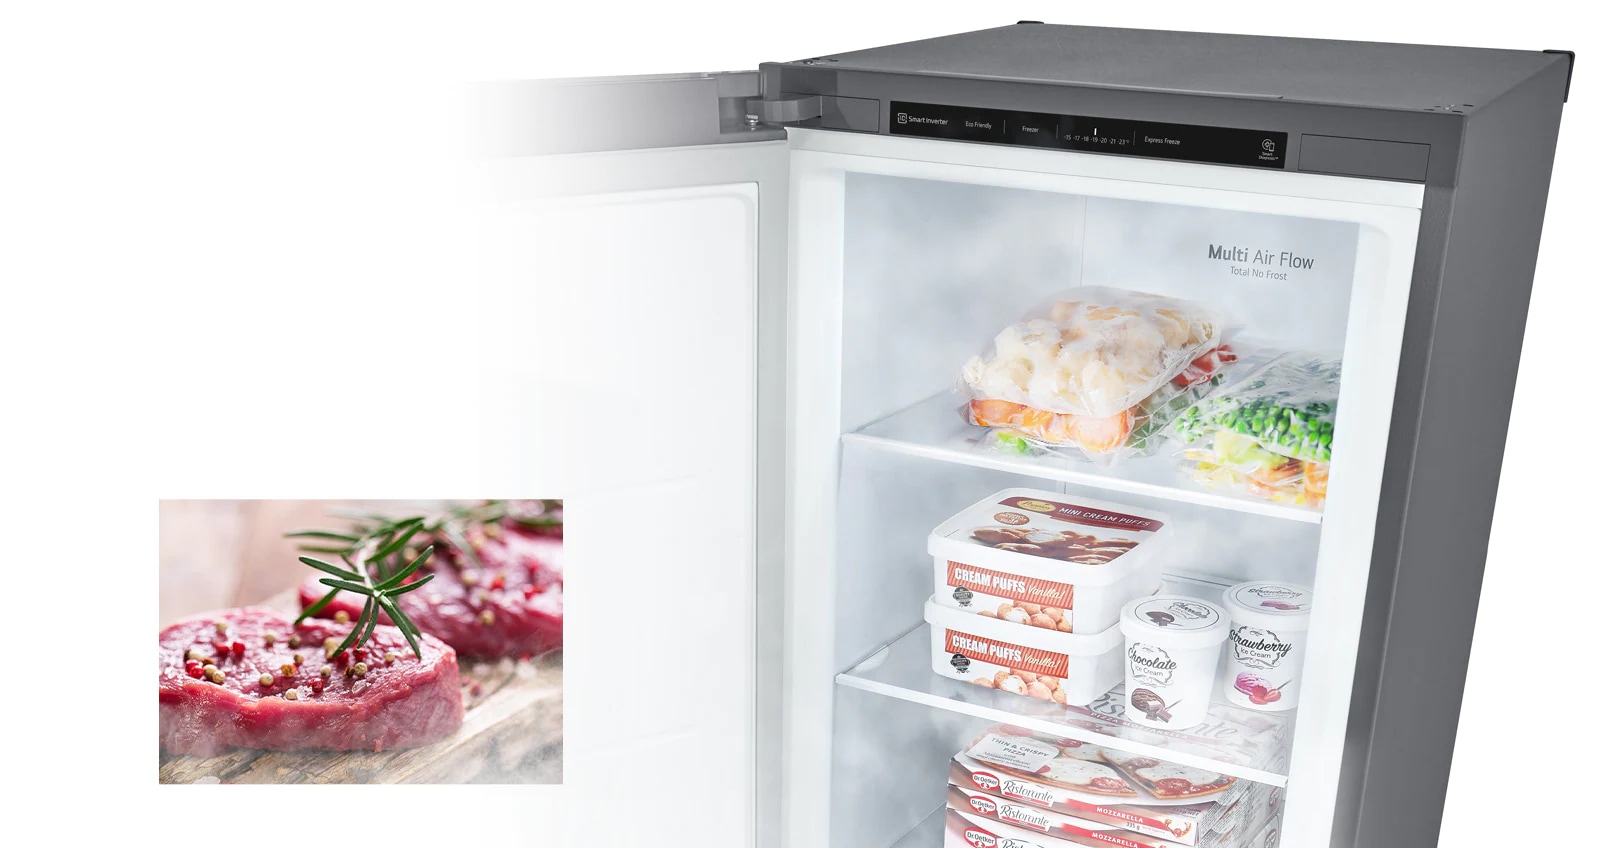 Une image présente un congélateur ouvert rempli de produits et de l’air froid qui est soufflé. La seconde image présente de la viande crue décongelée prête à être cuite.